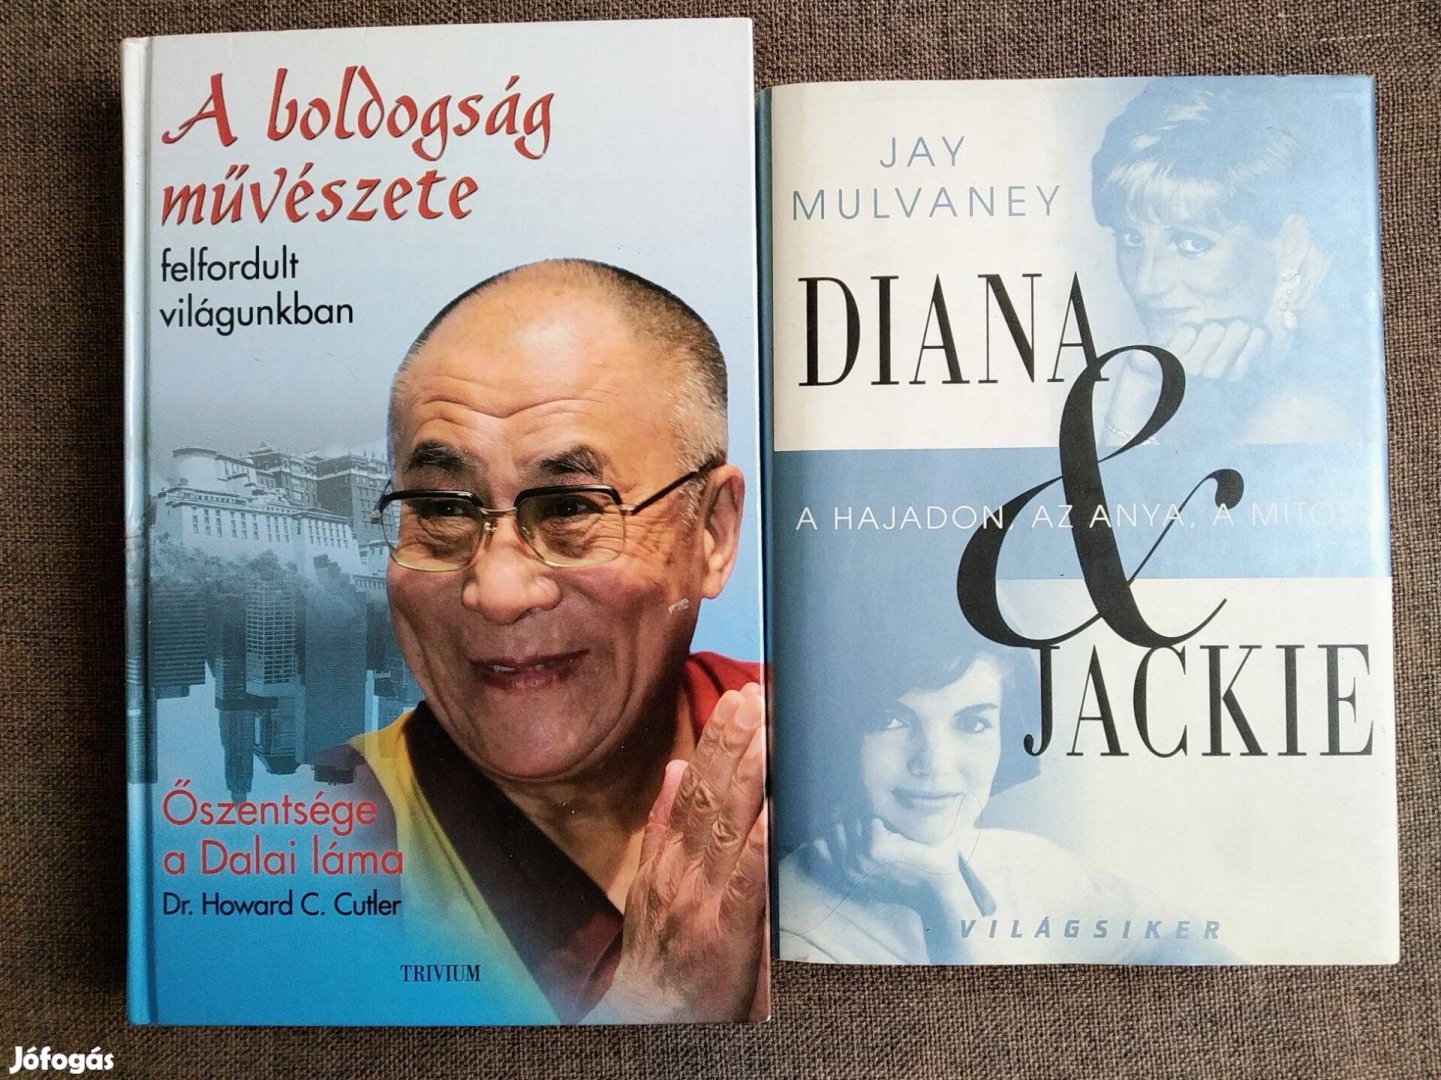 A boldogság művészete felfordult világunkban Dalai Láma Dr. Howard C